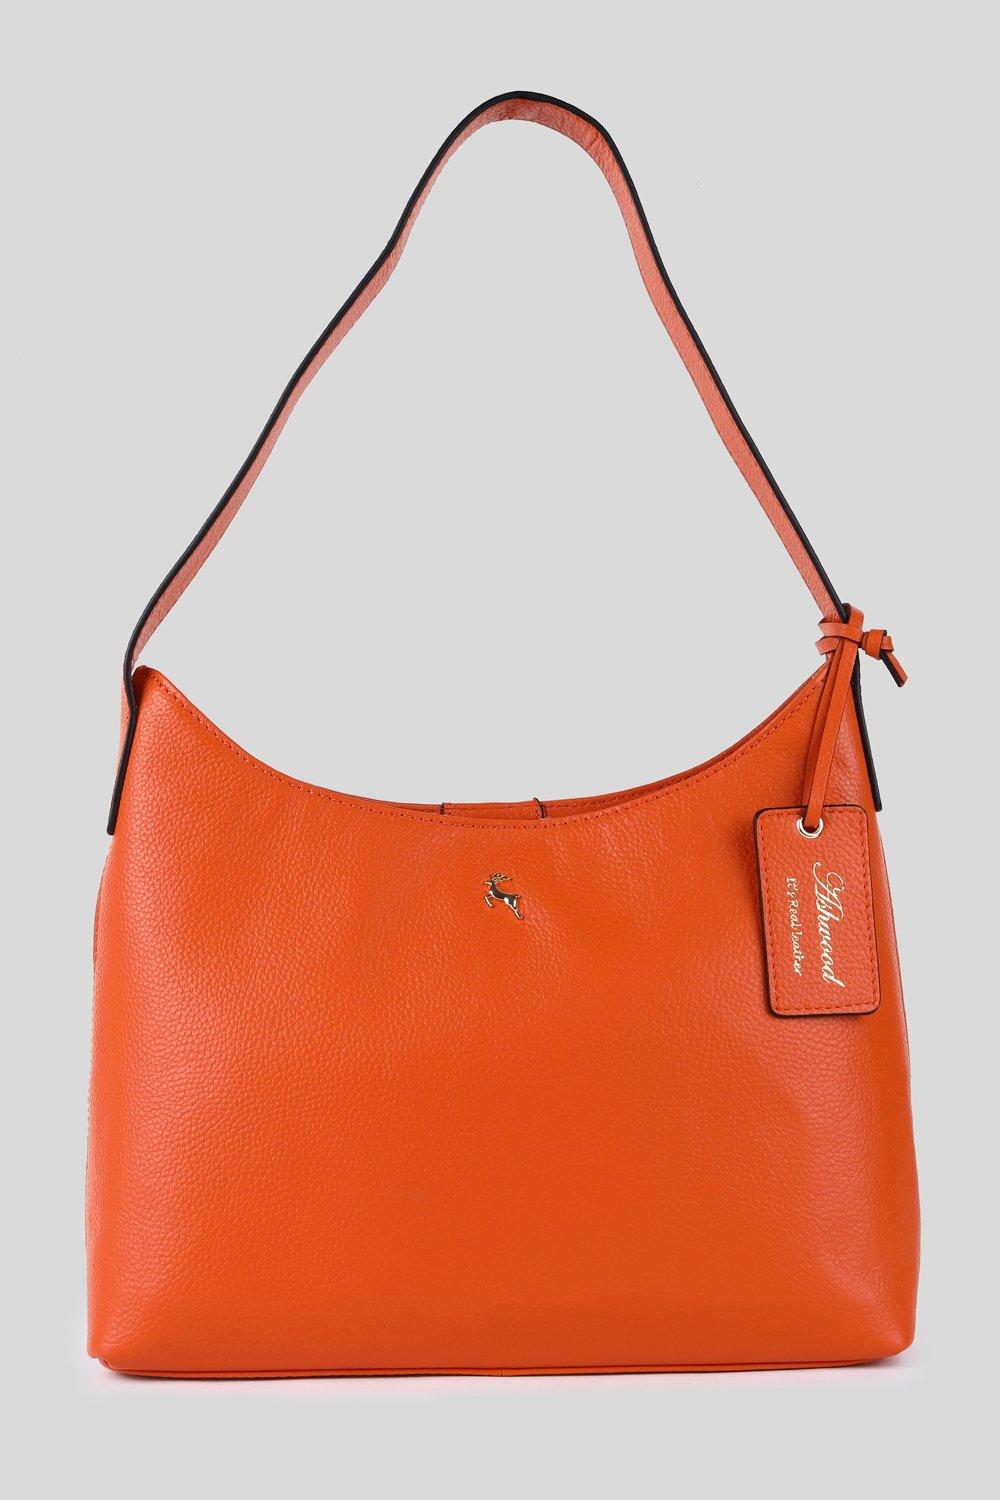 Сумка на плечо 'Splendore di Milano' из натуральной кожи Ashwood Leather, оранжевый сумка хобо на плечо capolavoro veneziano из натуральной кожи ashwood leather оранжевый